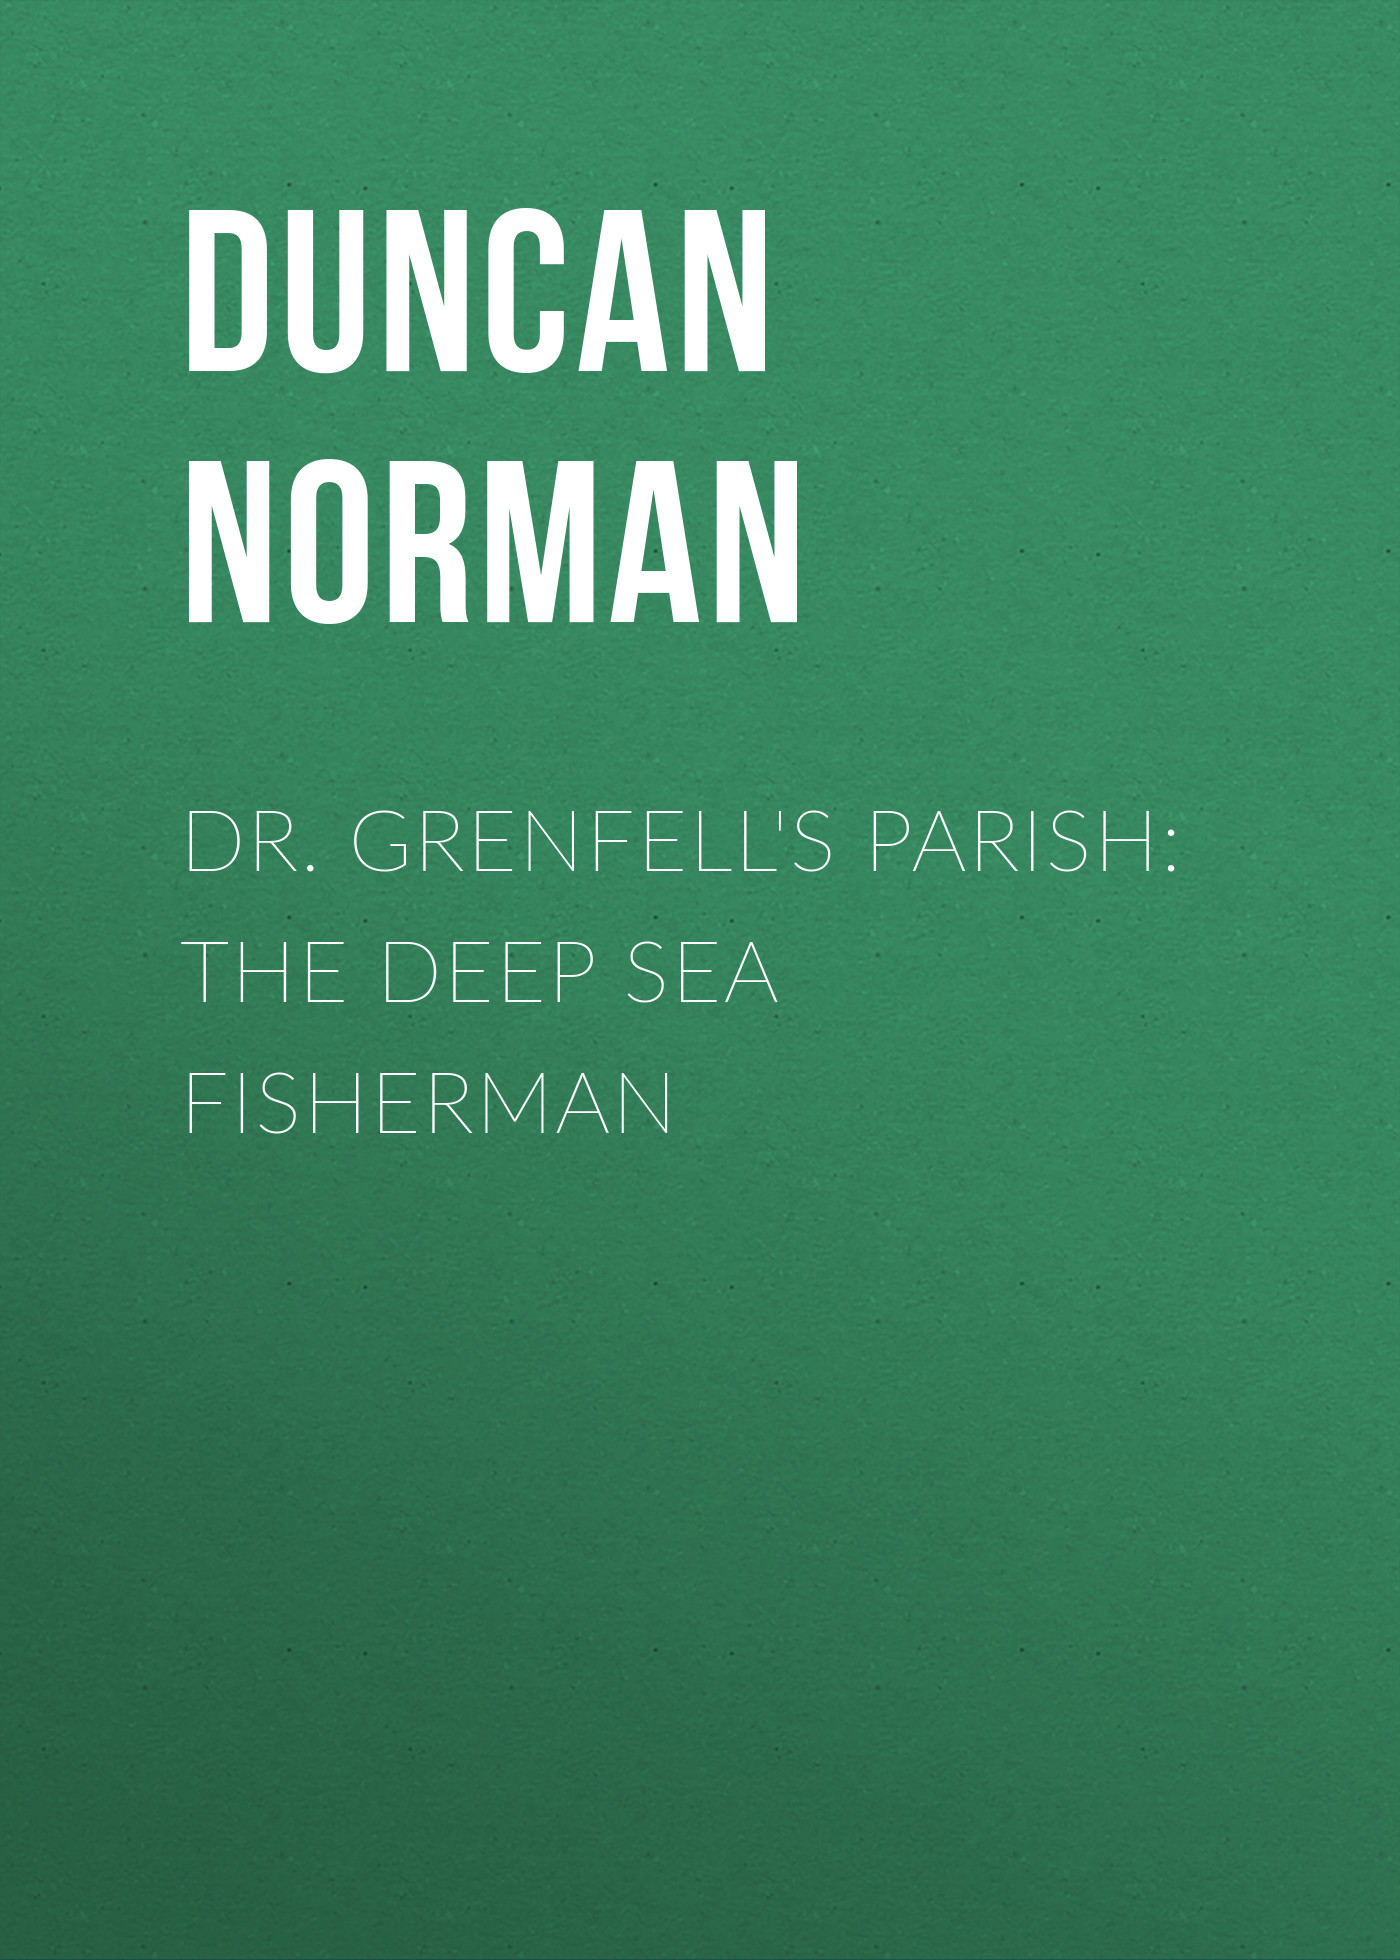 Книга Dr. Grenfell's Parish: The Deep Sea Fisherman из серии , созданная Norman Duncan, может относится к жанру Зарубежная старинная литература, Зарубежная классика. Стоимость электронной книги Dr. Grenfell's Parish: The Deep Sea Fisherman с идентификатором 24621445 составляет 0 руб.